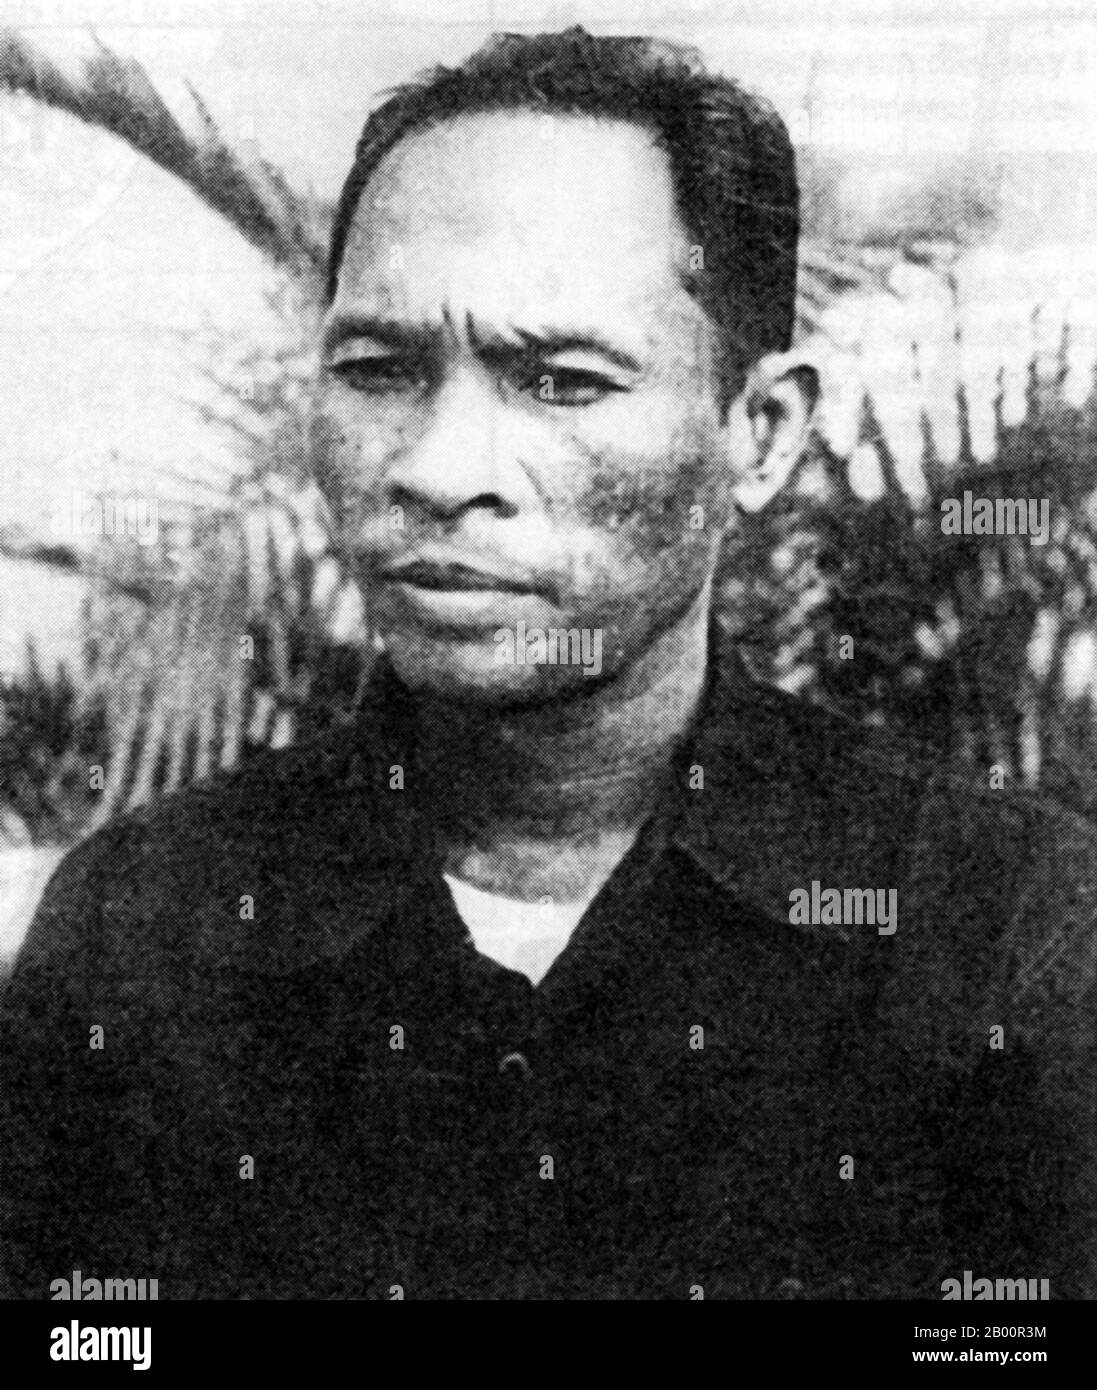 Cambogia: Heng Samrin (nato nel 1934), Presidente della Repubblica popolare di Kampuchea e dello Stato della Cambogia (1979-1993). Heng Samrin (1934) è un politico cambogiano. È stato presidente della Repubblica popolare di Kampuchea e dello Stato della Cambogia (1979-1993), e successivamente vice presidente (1998-2006) e presidente dell'Assemblea nazionale della Cambogia dal 2006. Foto Stock